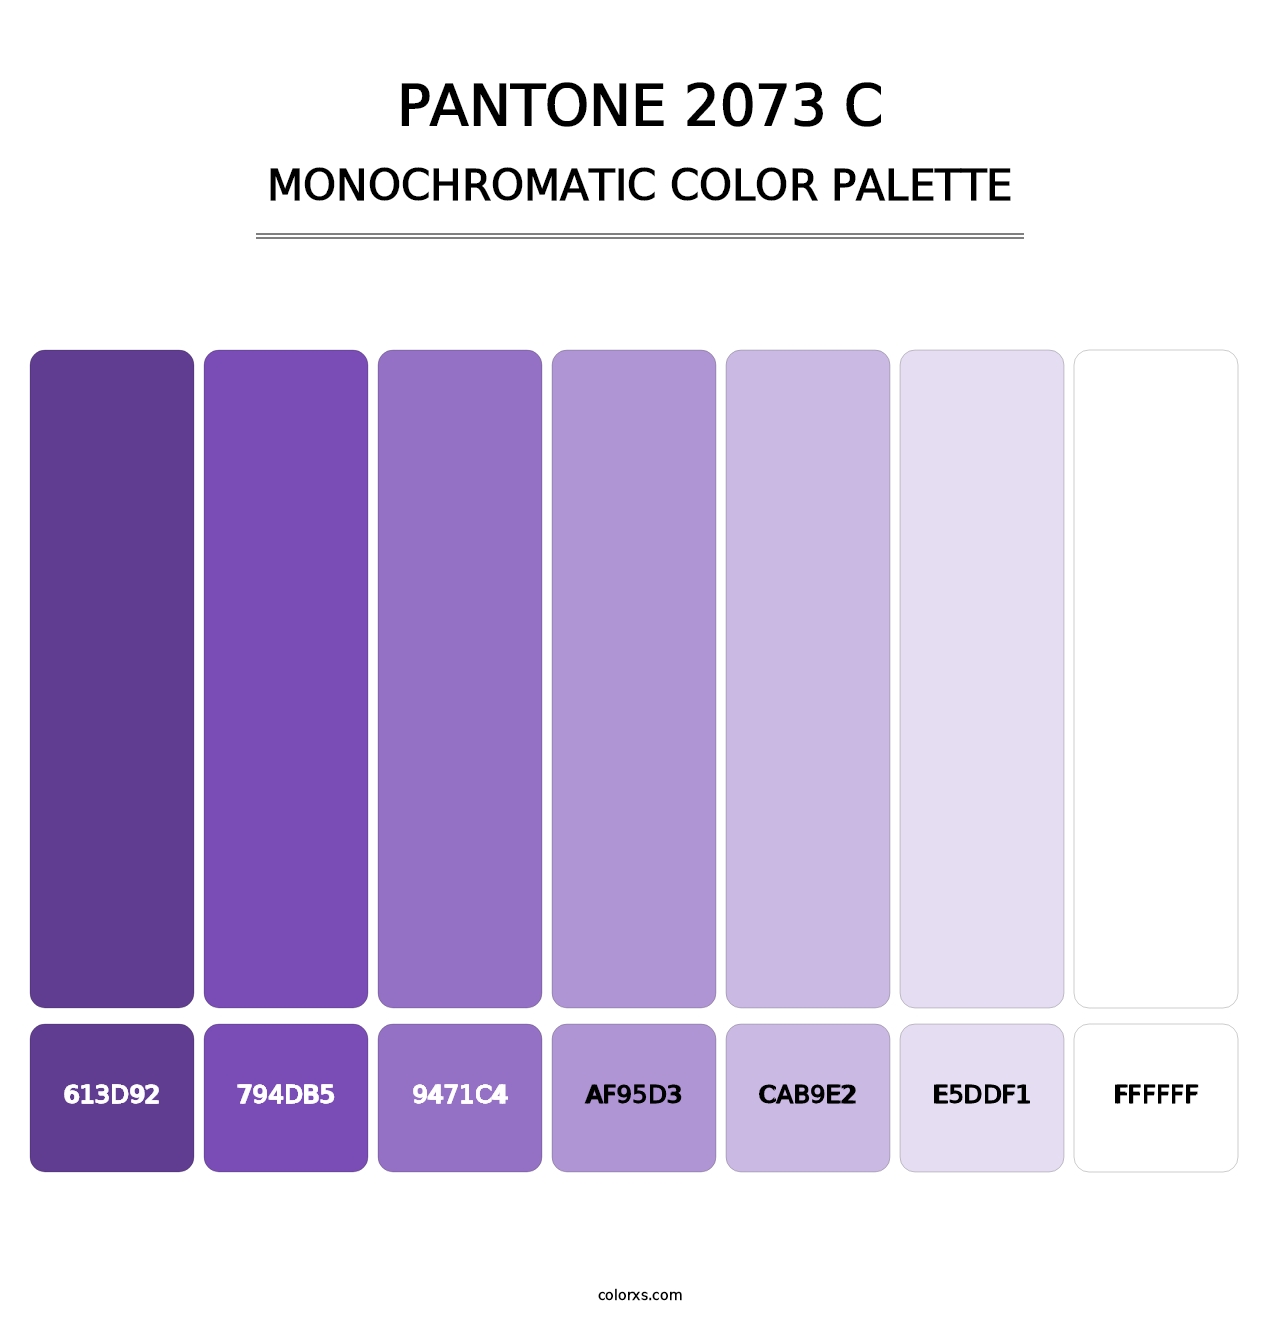 PANTONE 2073 C - Monochromatic Color Palette